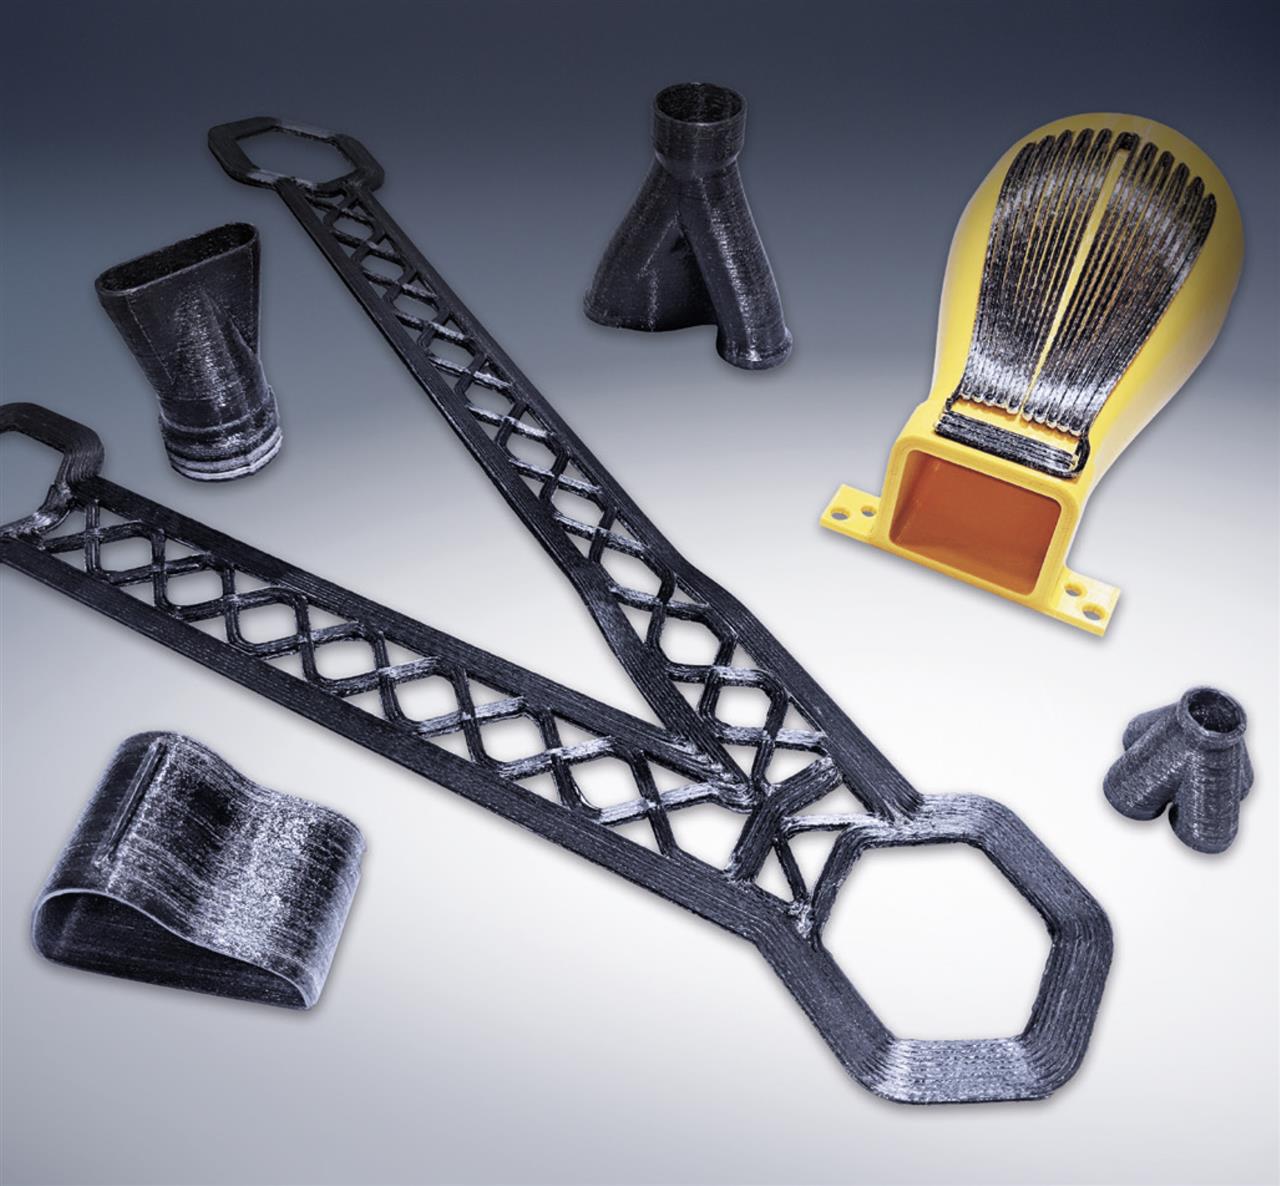 MasterPrint® Continuous Filament, continuous fiber 3D printer